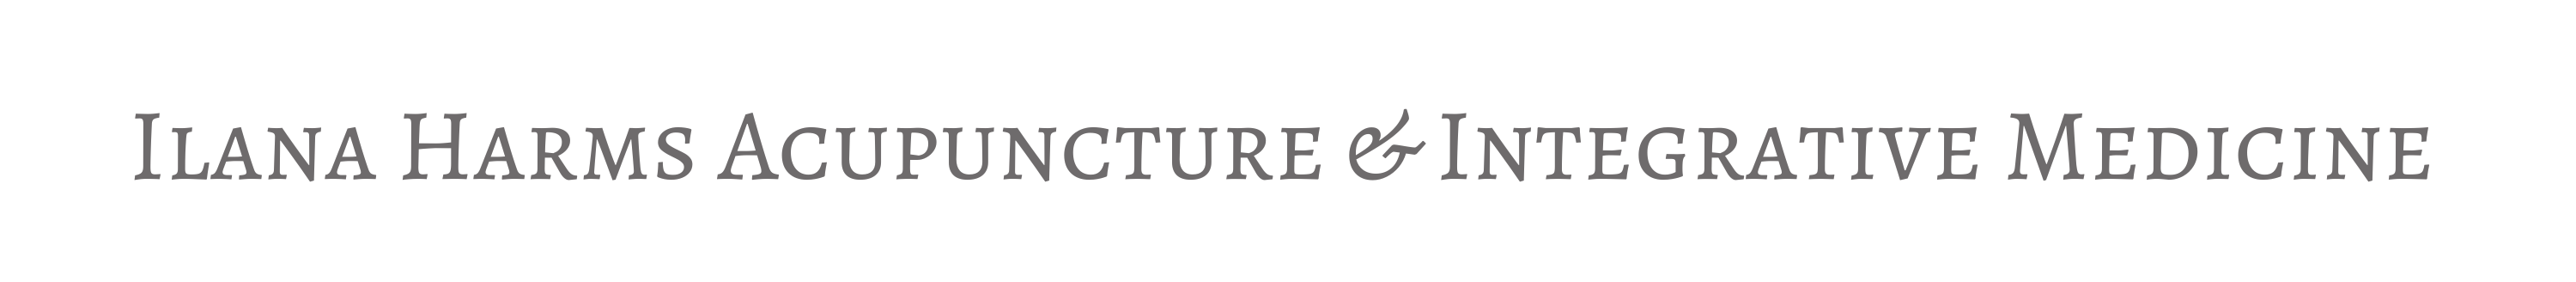 Logo: Ilana Harms Acupuncture & Integrative Medicine Inc